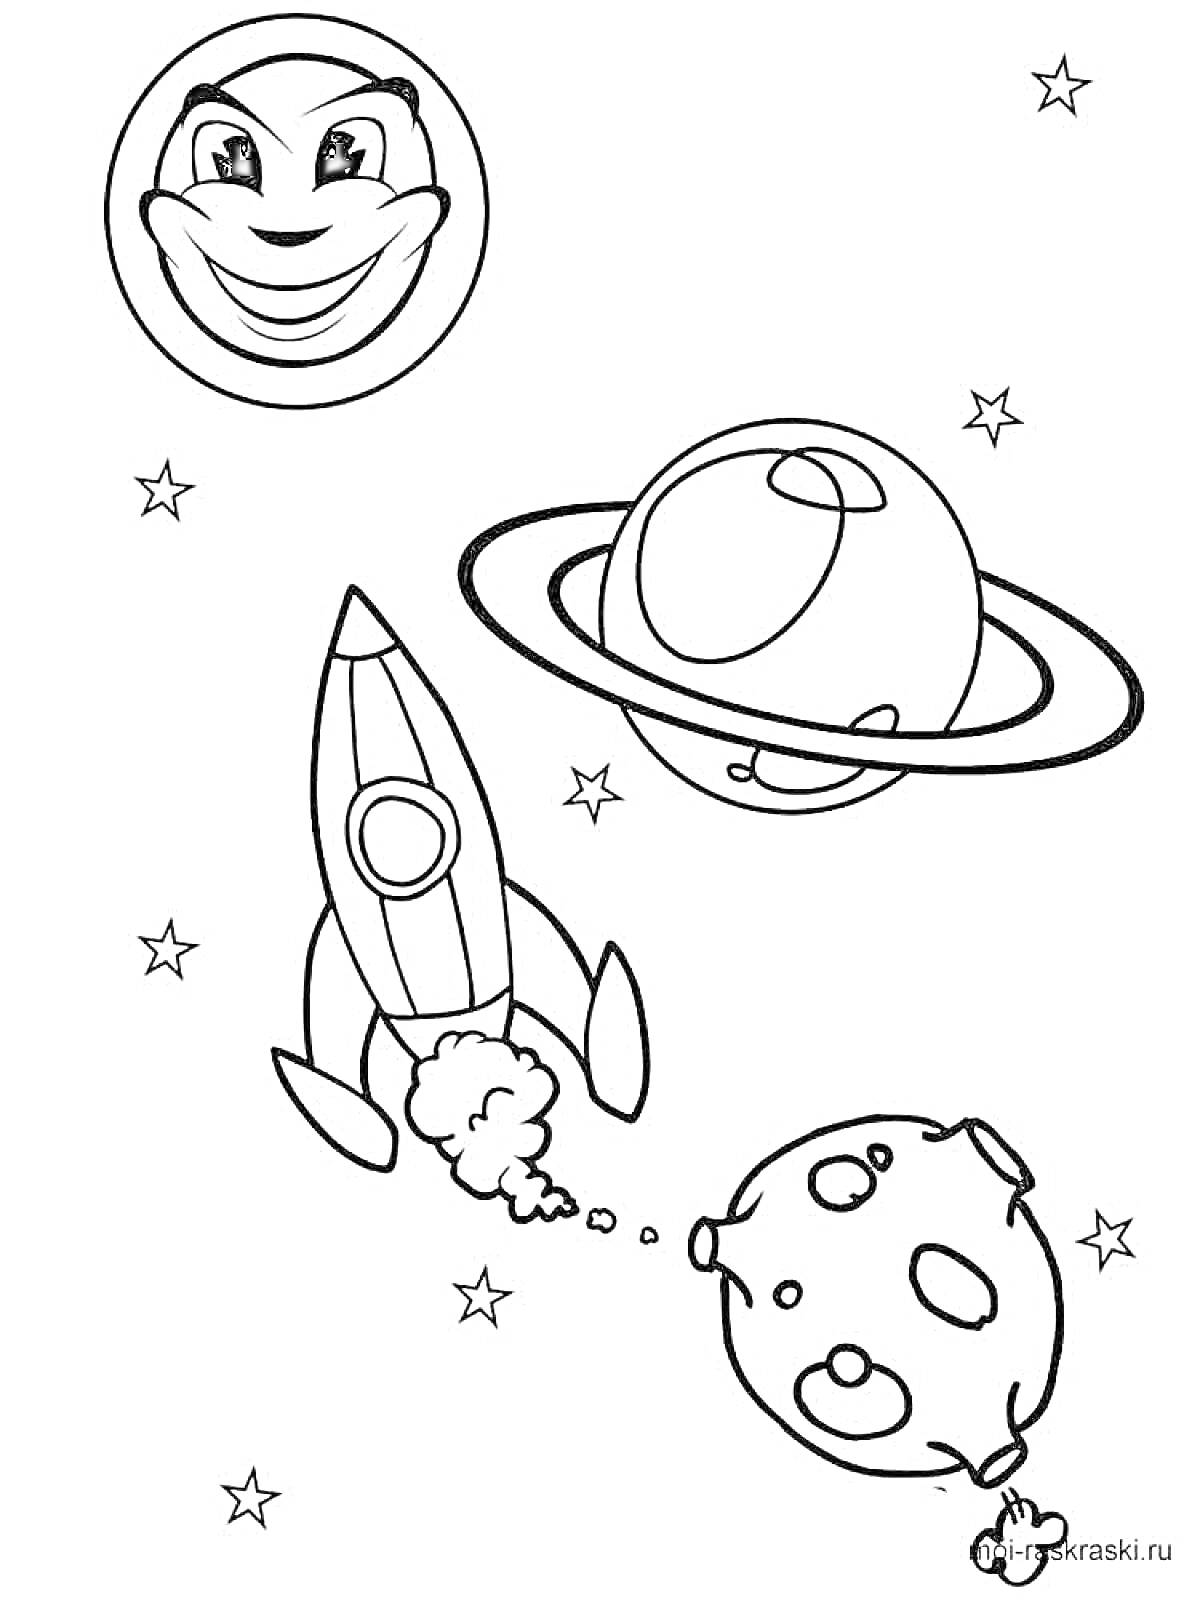 Раскраска Планета с лицом, ракета, спутник с кольцами, и луна в космосе